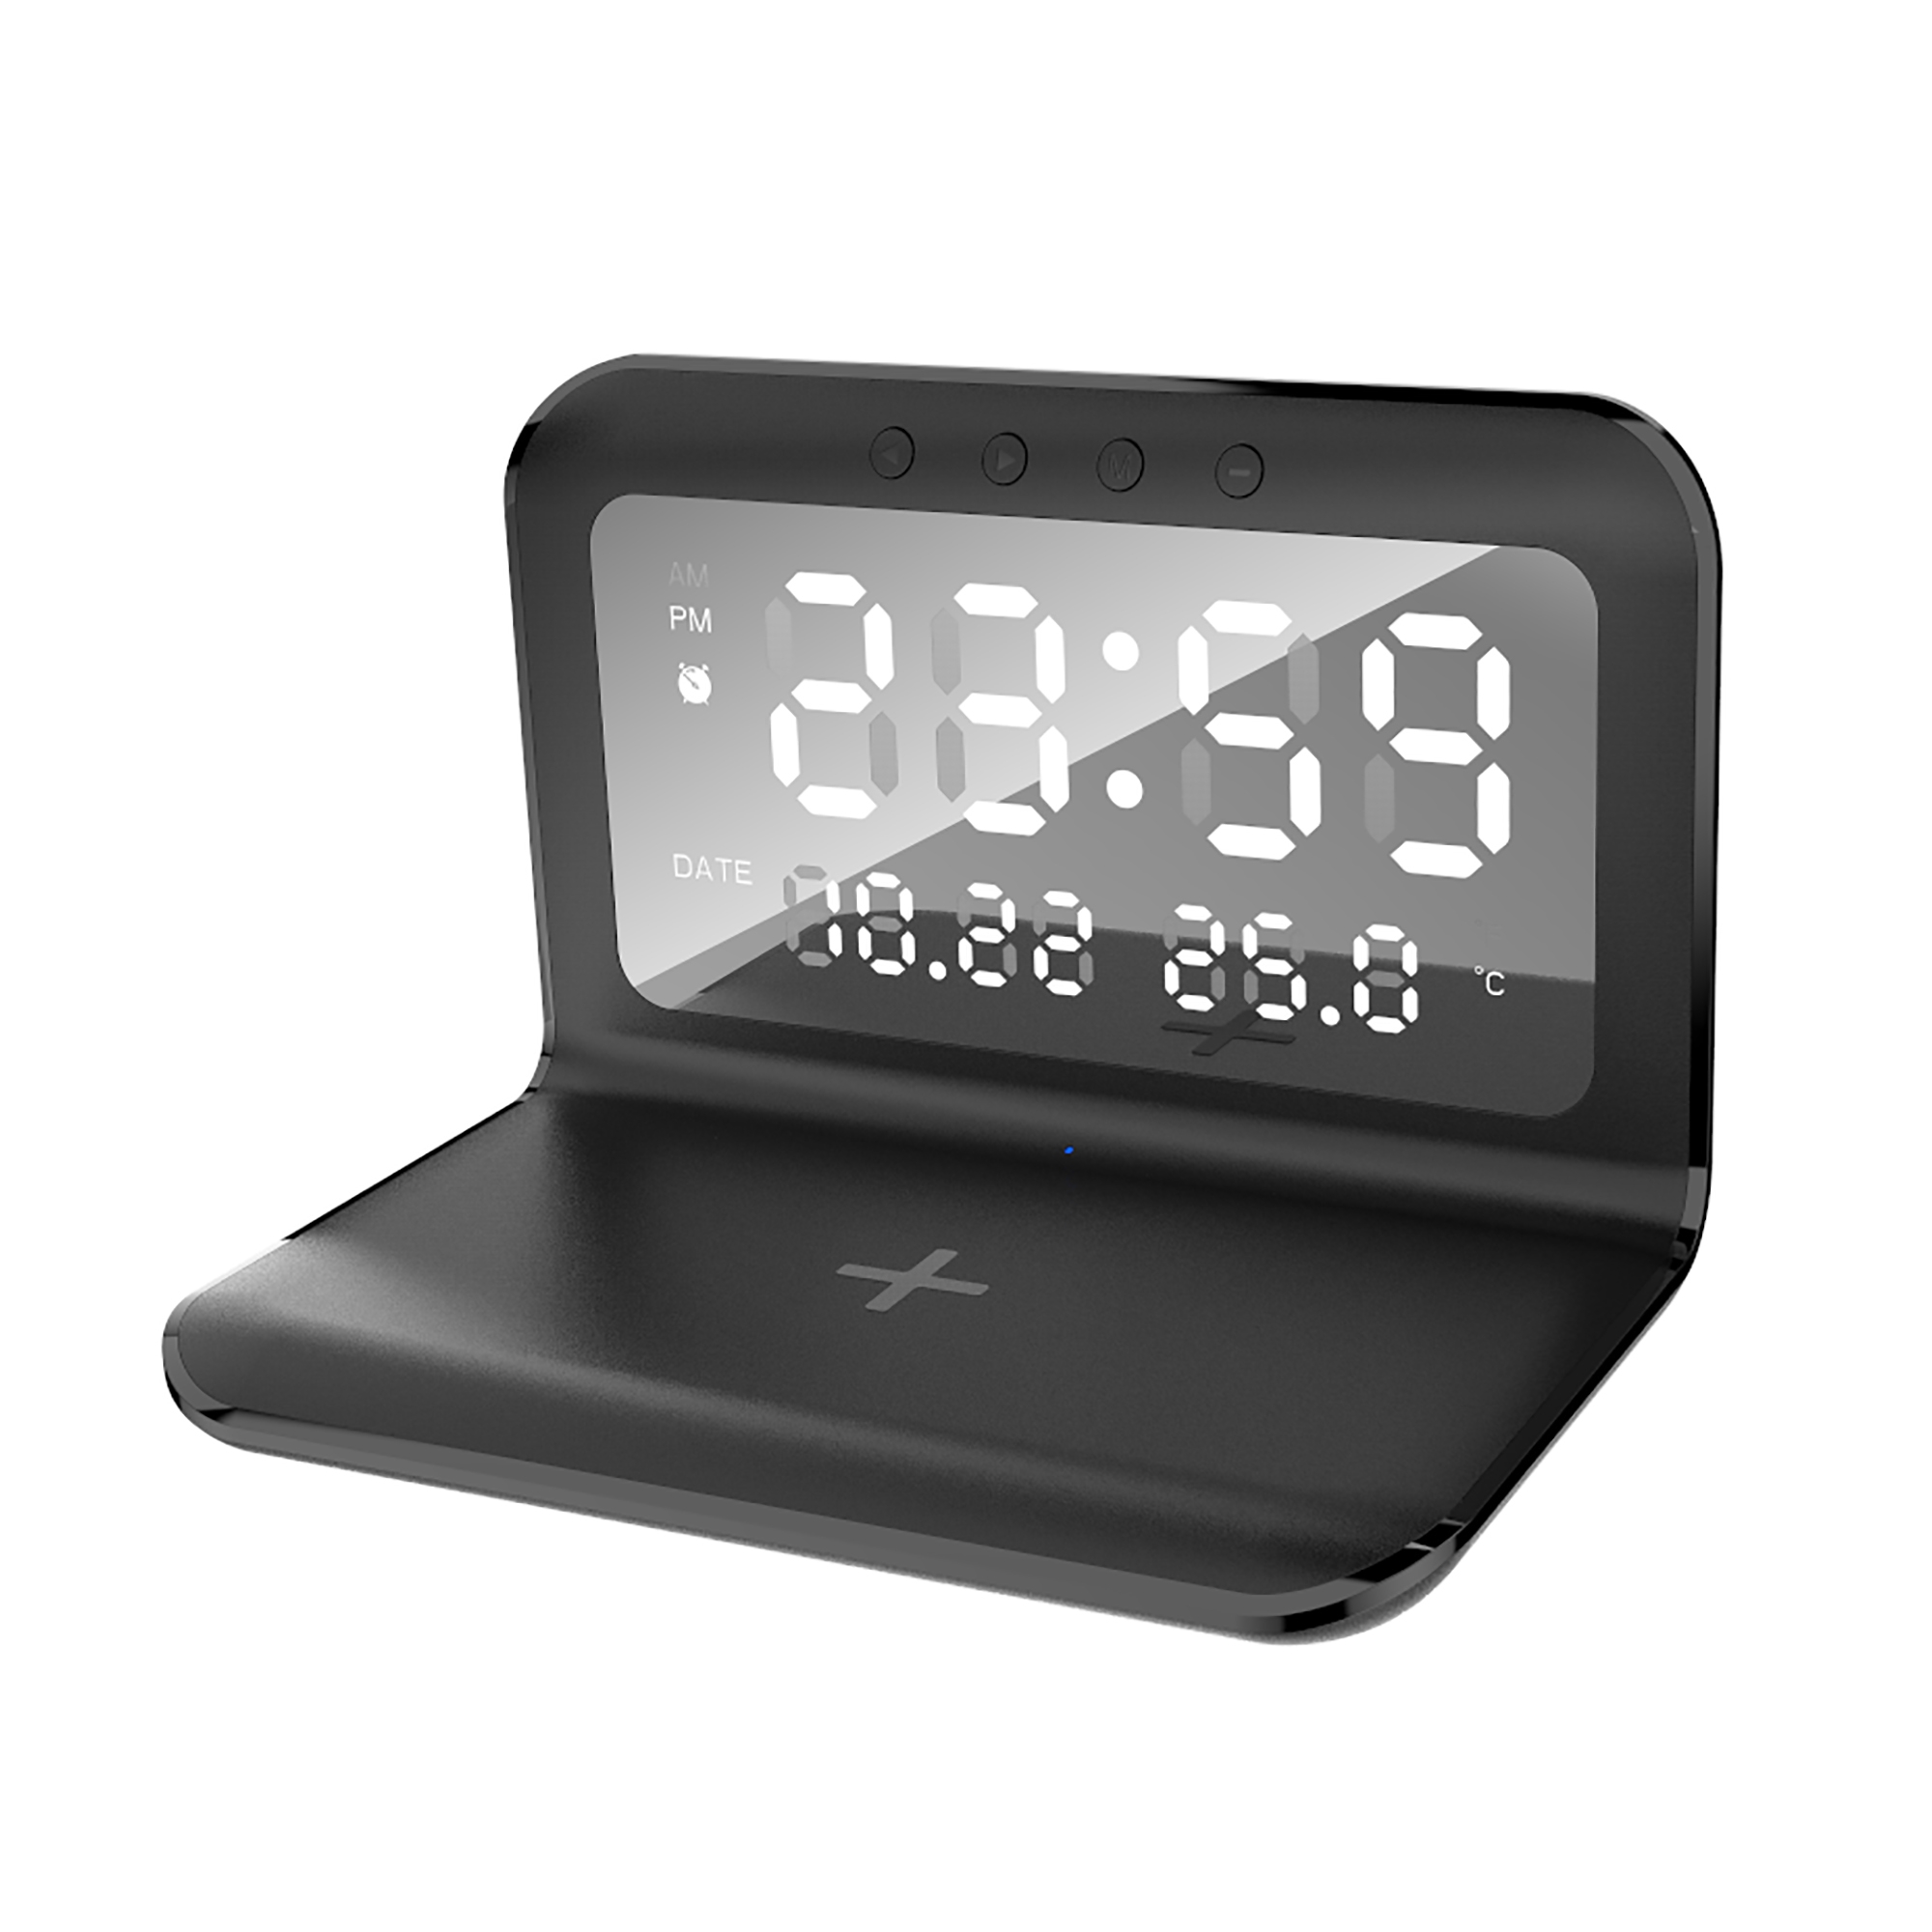 Настольные часы "Smart Time" с беспроводным (15W) зарядным устройством, будильником и термометром, со съёмным дисплеем, черный, пластик